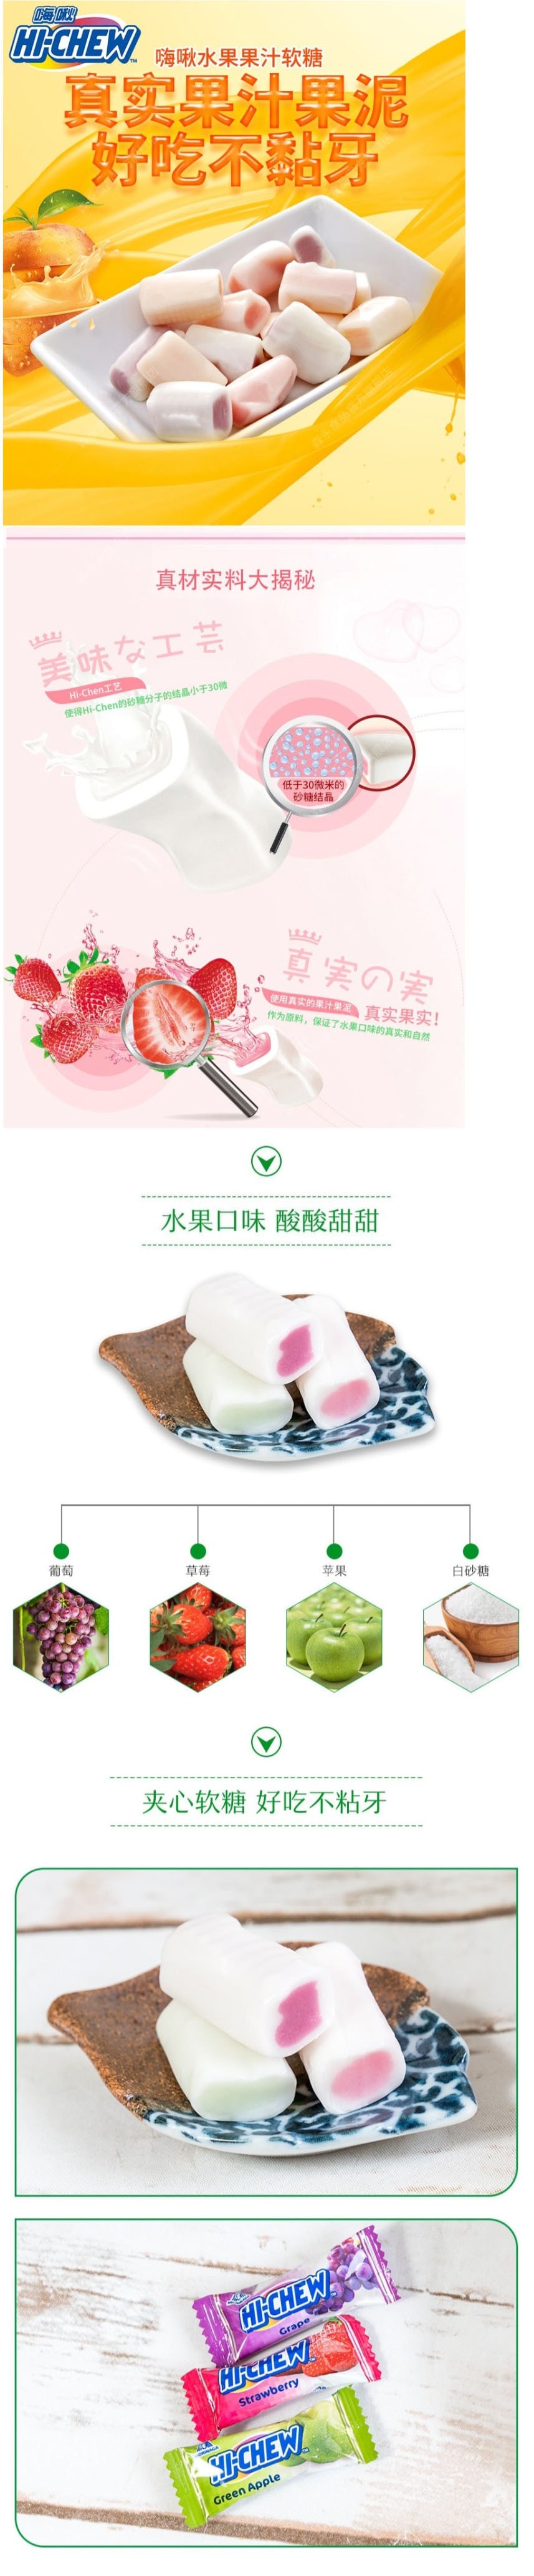 【日本直效郵件】MORINAGA森永 水果口味夾心軟糖 3種口味組合裝 草莓口味/葡萄口味/蘋果口味 86g